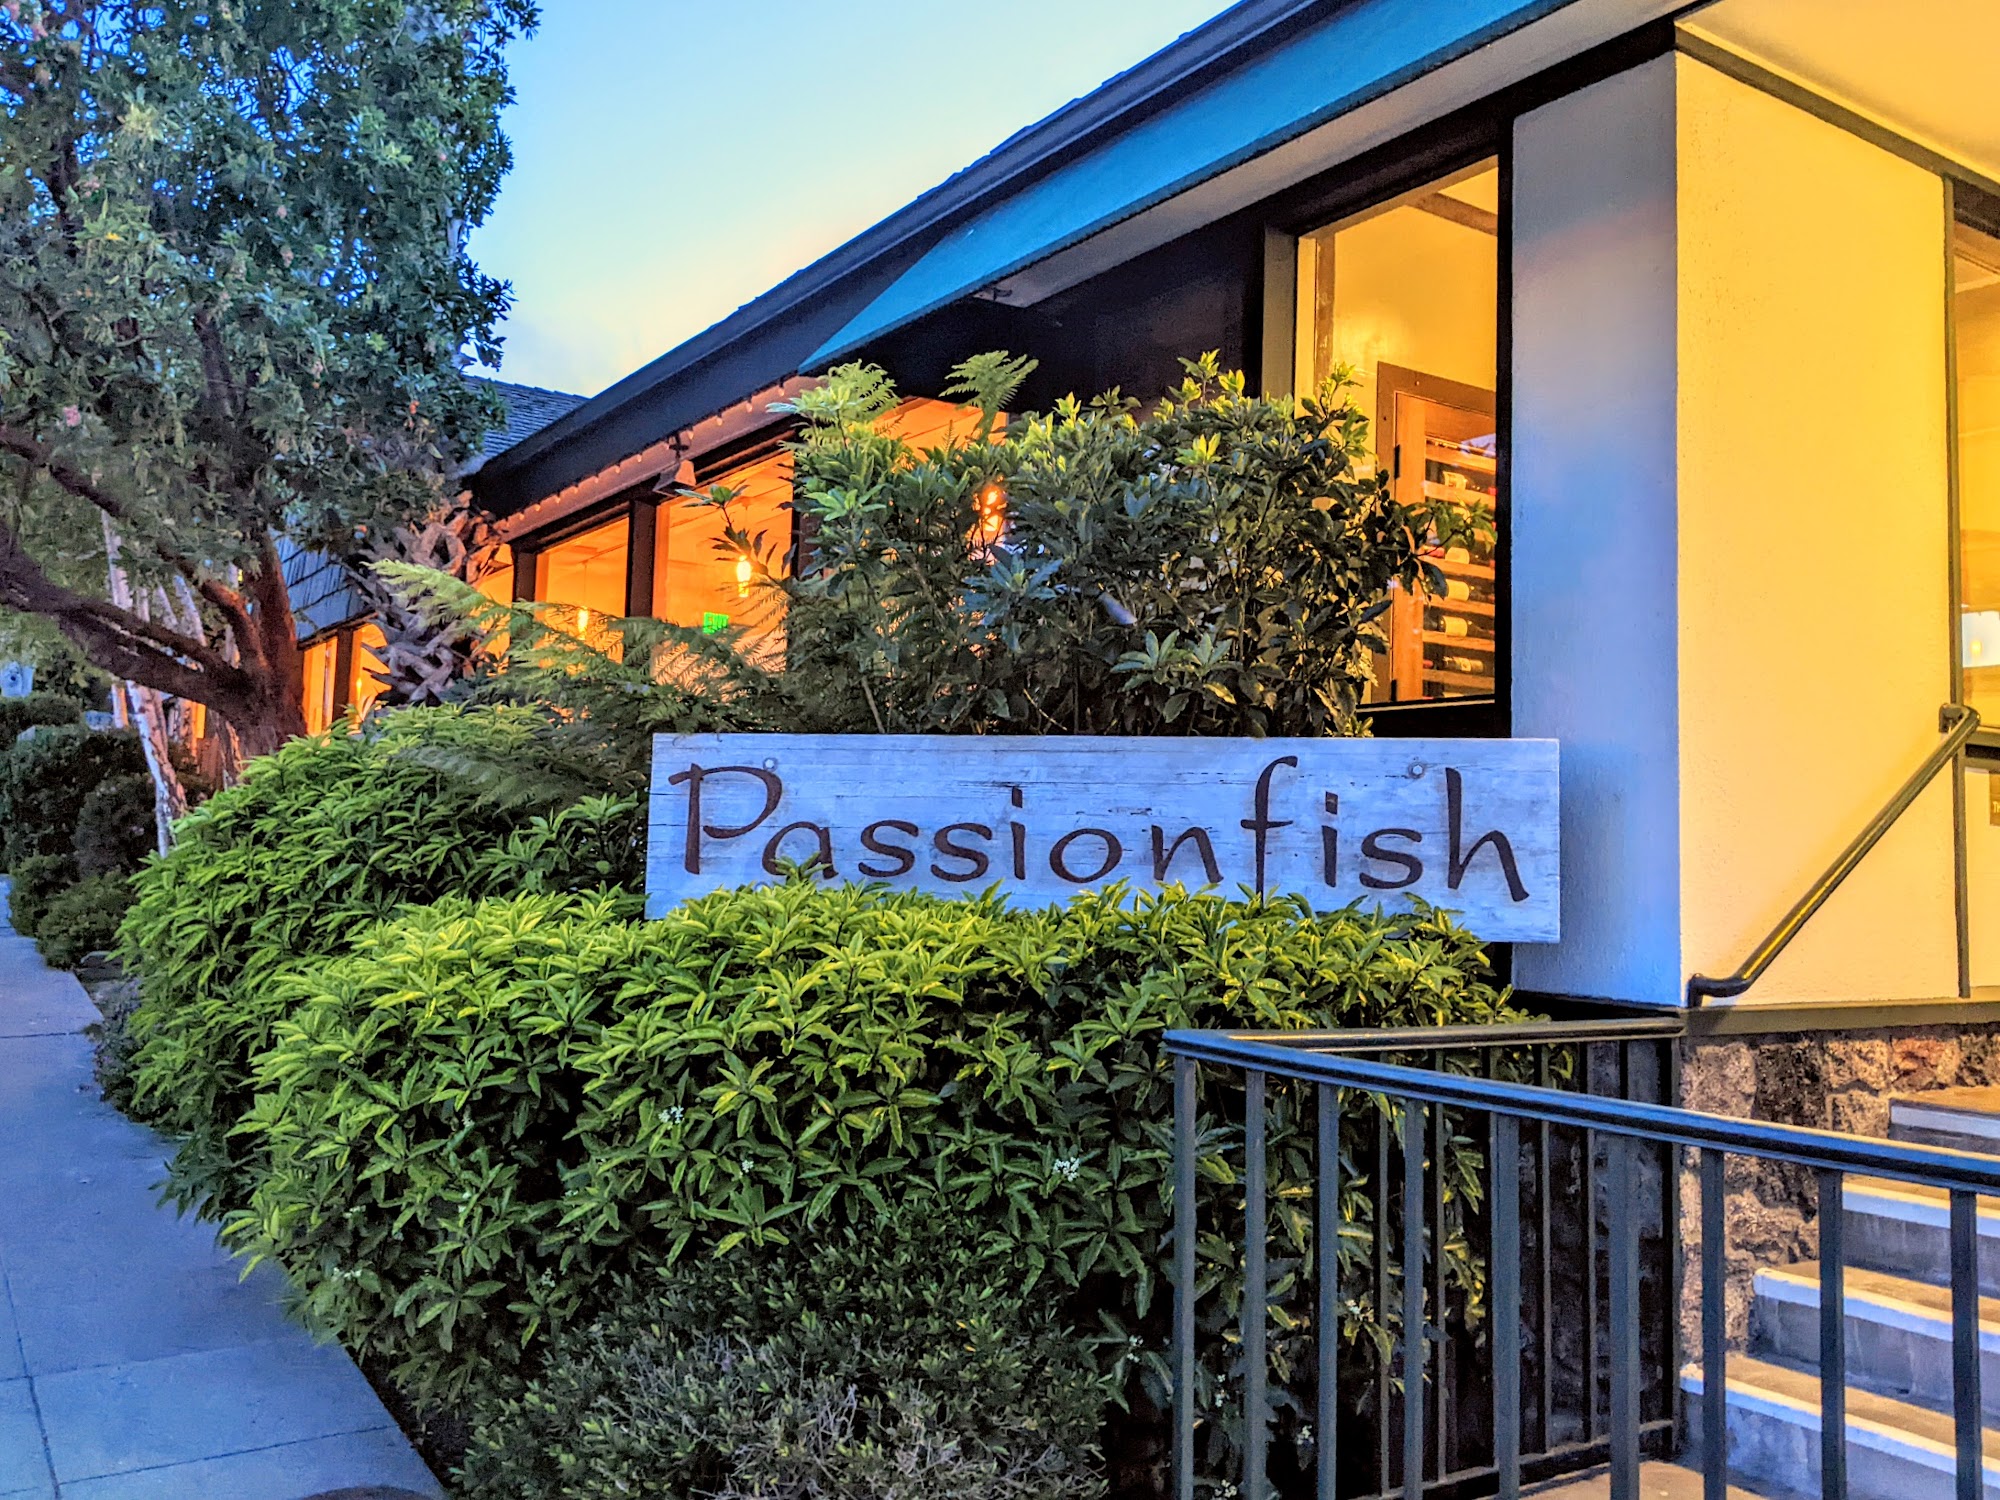 Passionfish